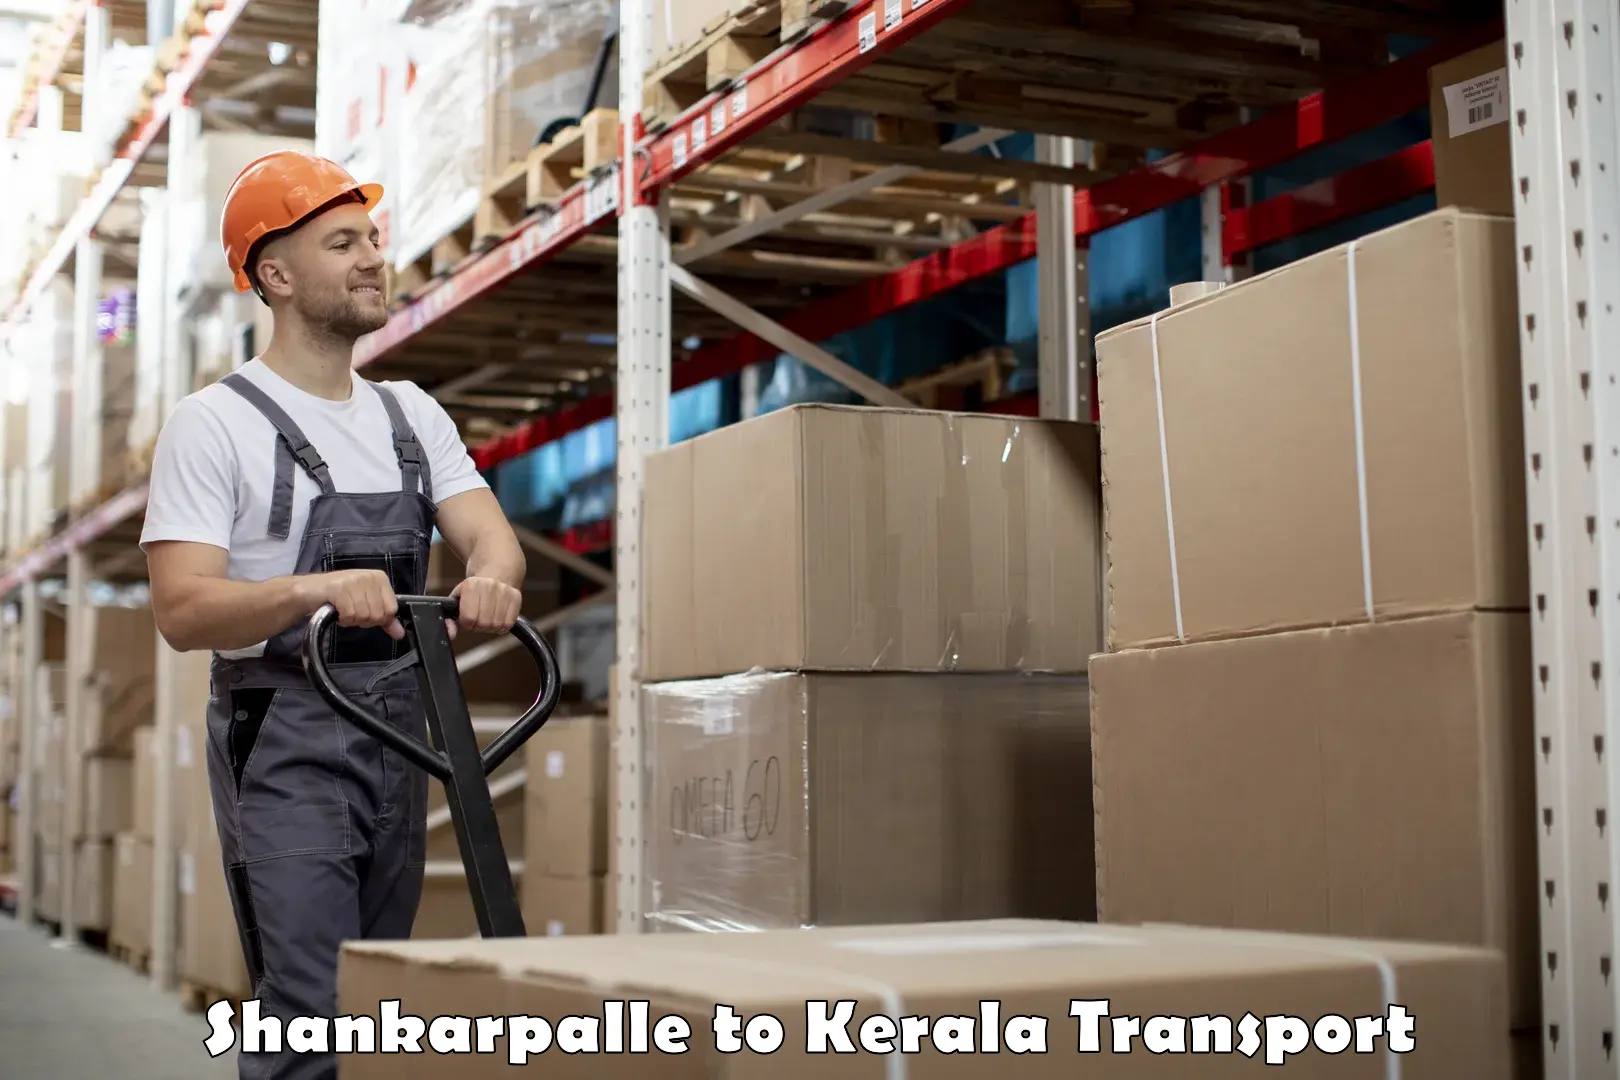 Online transport service Shankarpalle to Parippally